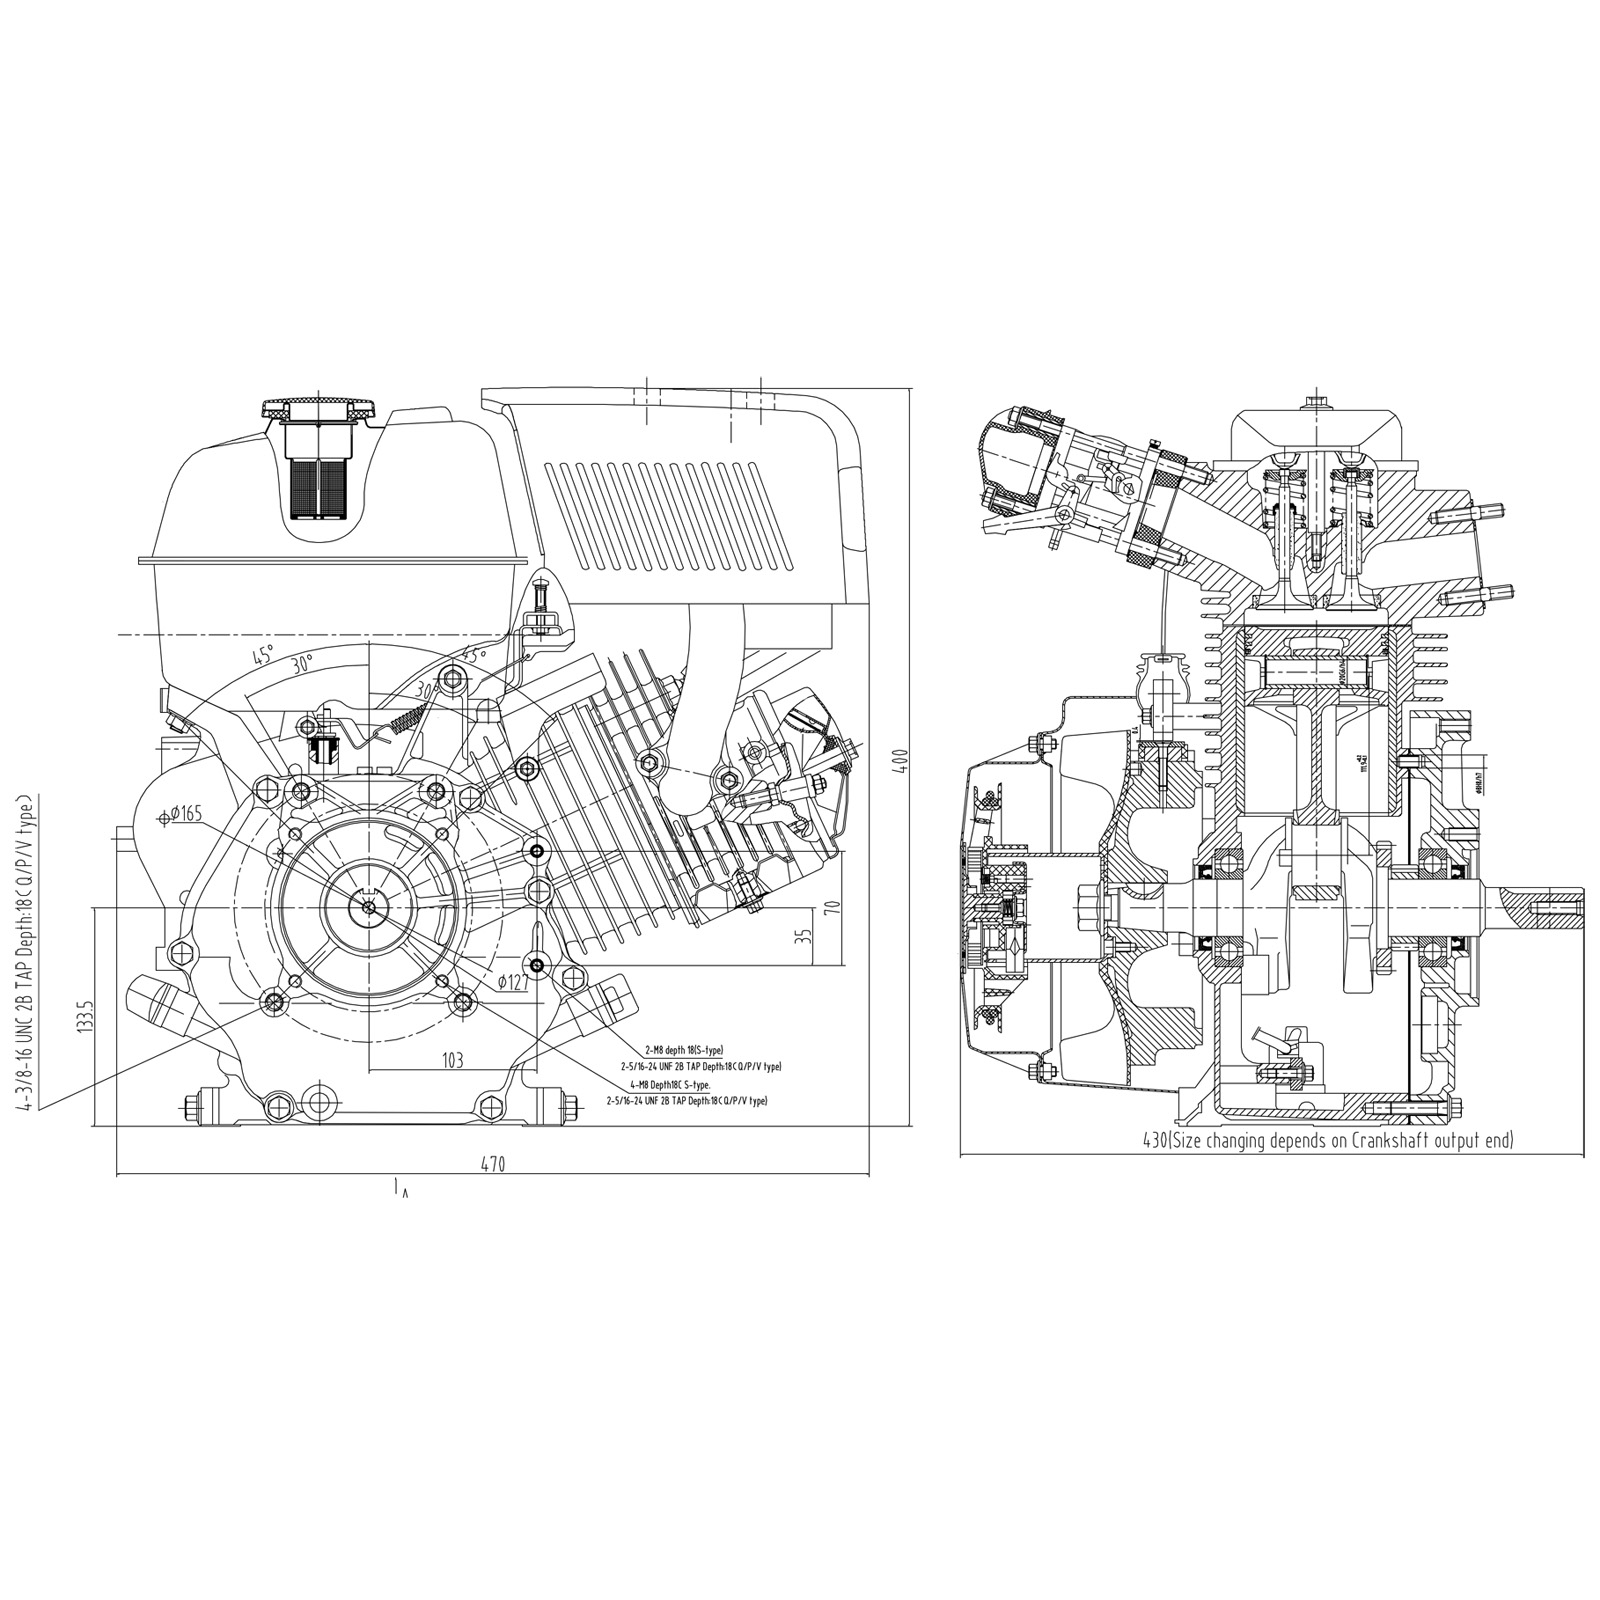 LIFAN 177 Petrol Engine 6.6kW (9Hp) wet clutch gearbox 2:1 E-Star